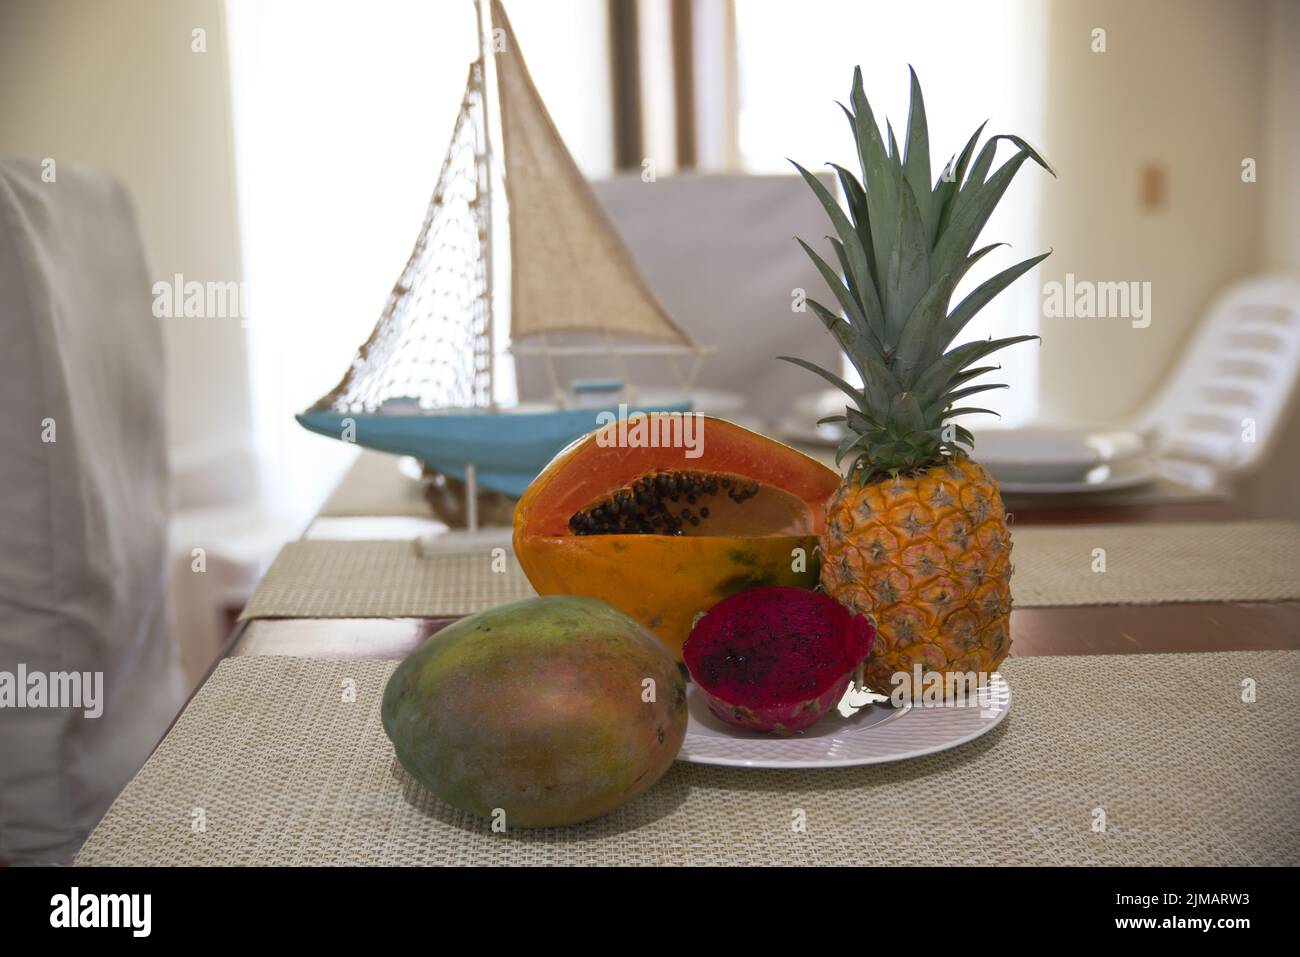 Exotische Früchte auf dem Tisch mit Servietten, Yachtmodell und Fenster Stockfoto